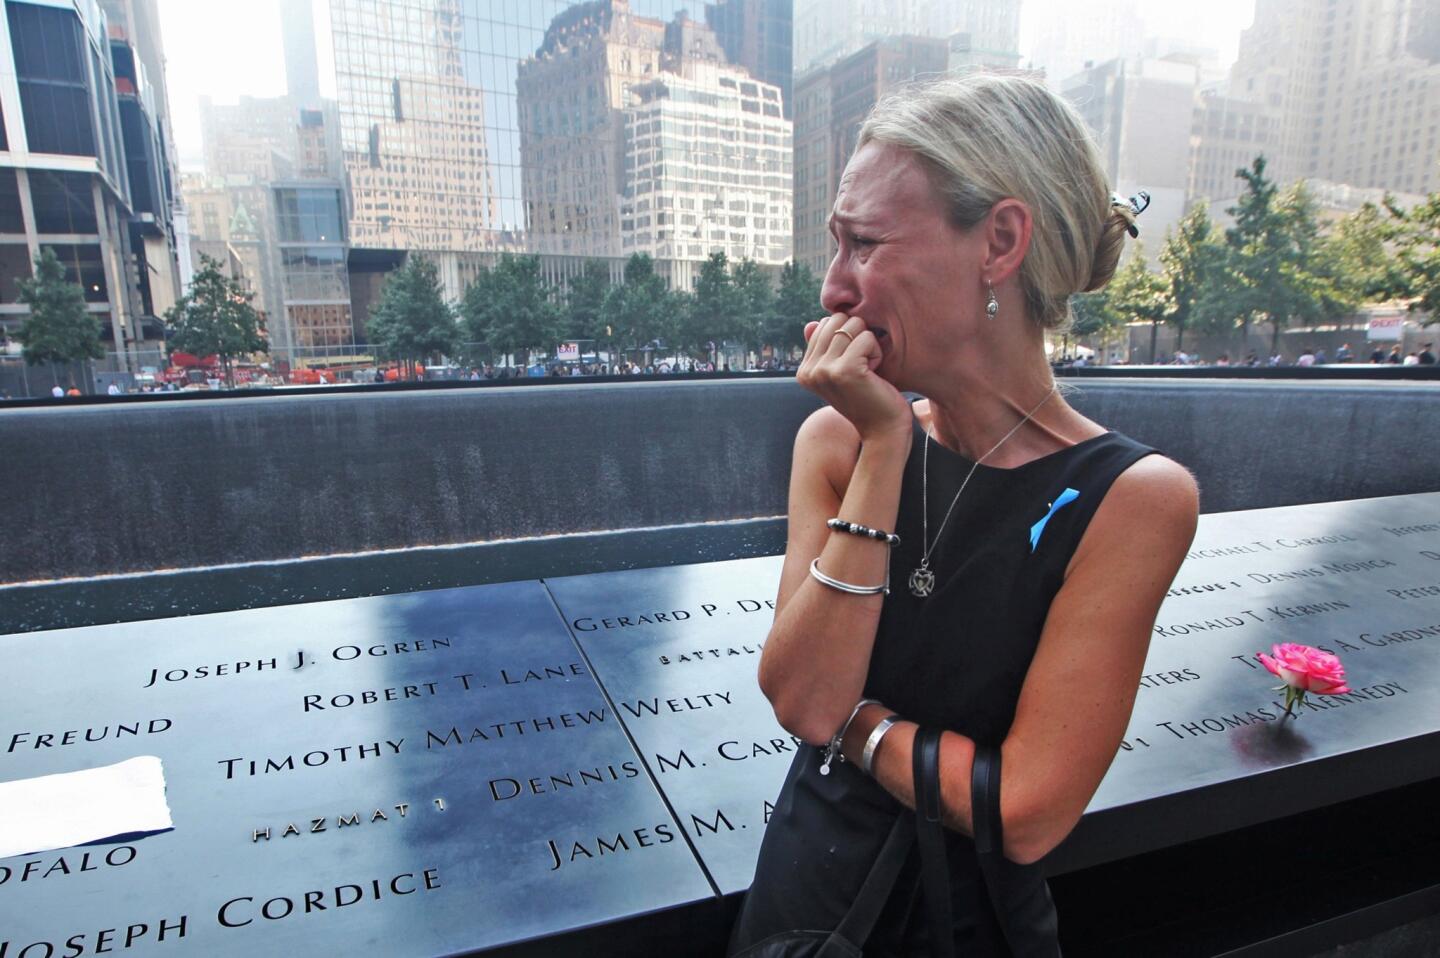 Sept. 11 memorial